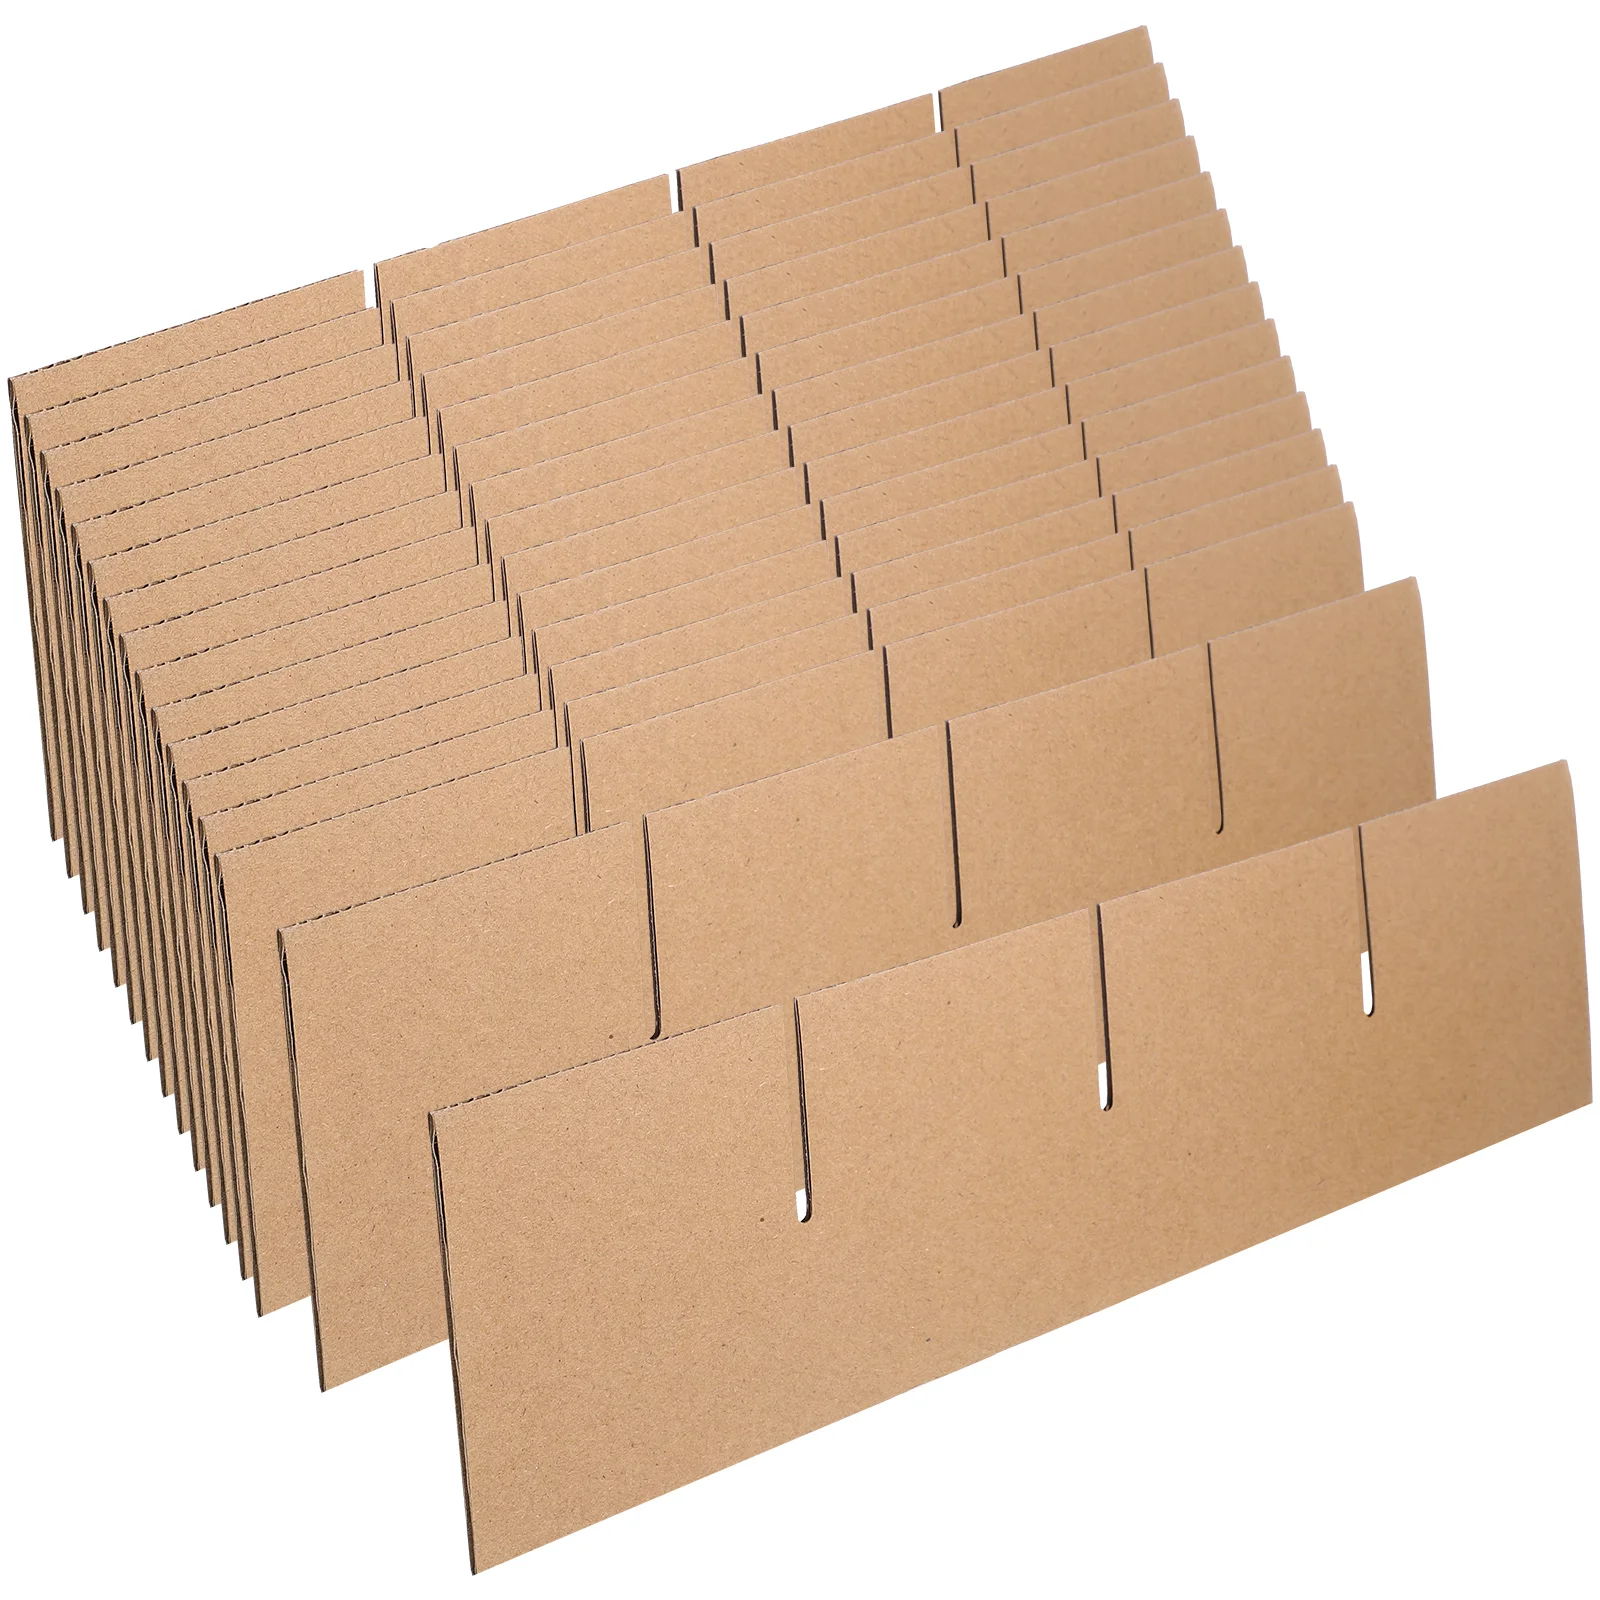 

Картонные перегородки для движущихся коробок картонные коробки стеклянные перегородки картонные перегородки для движущихся перегородки стеклянная тарелка